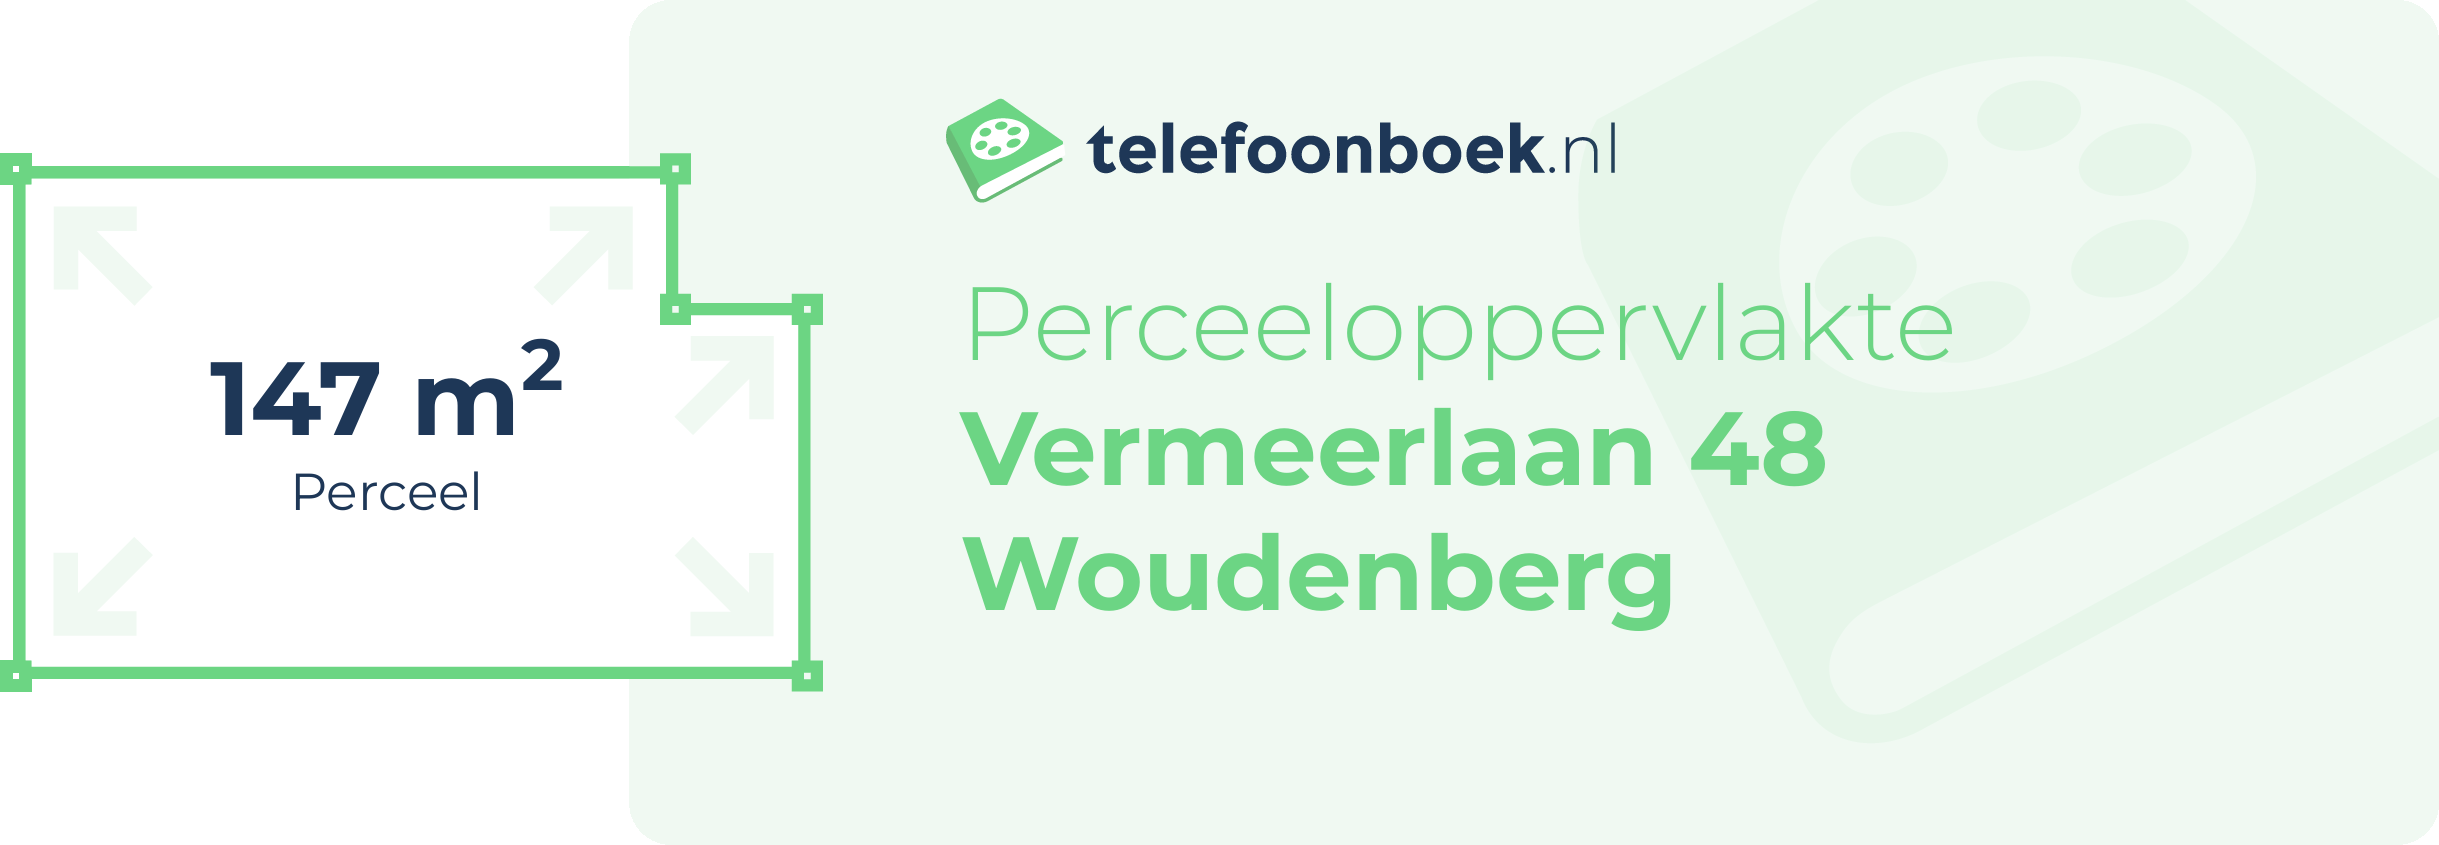 Perceeloppervlakte Vermeerlaan 48 Woudenberg